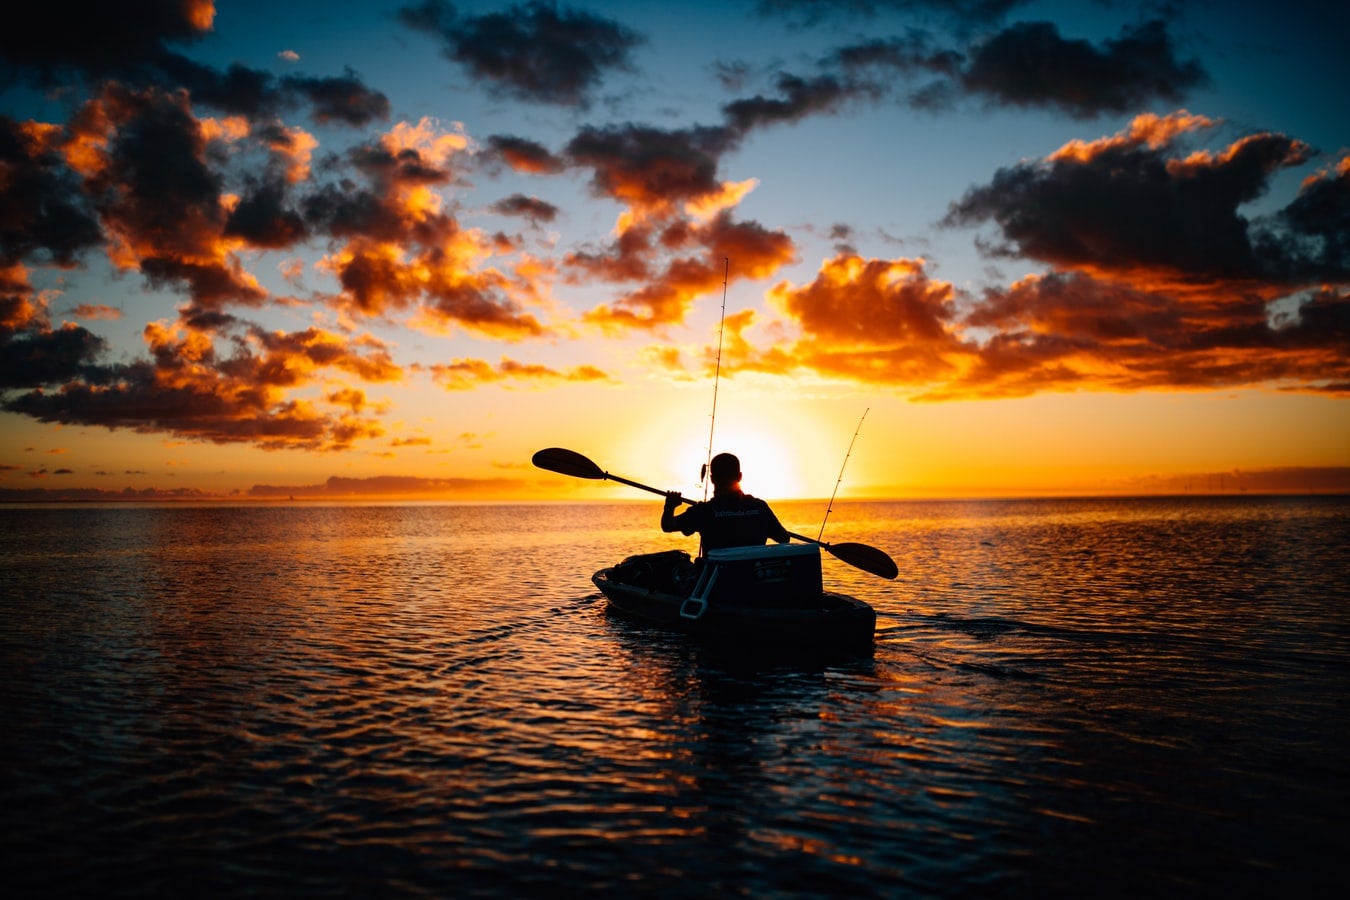 An angler paddles a kayak at dawn on a lake.